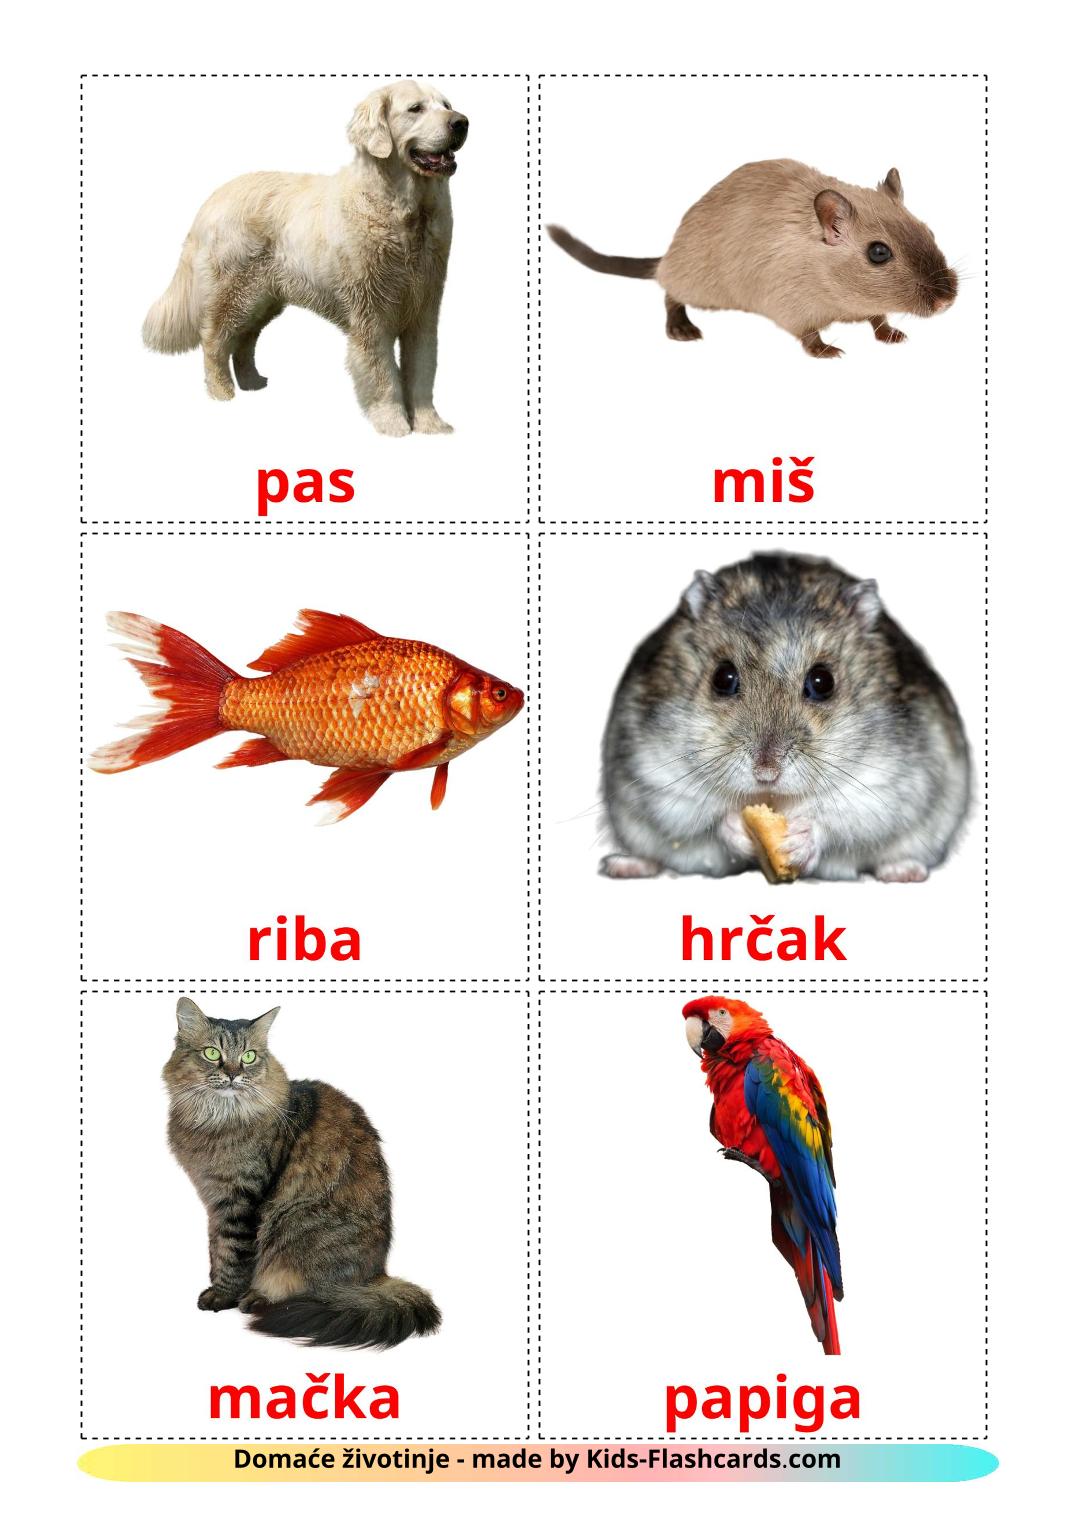 Les animaux Domestiques - 10 Flashcards croate imprimables gratuitement